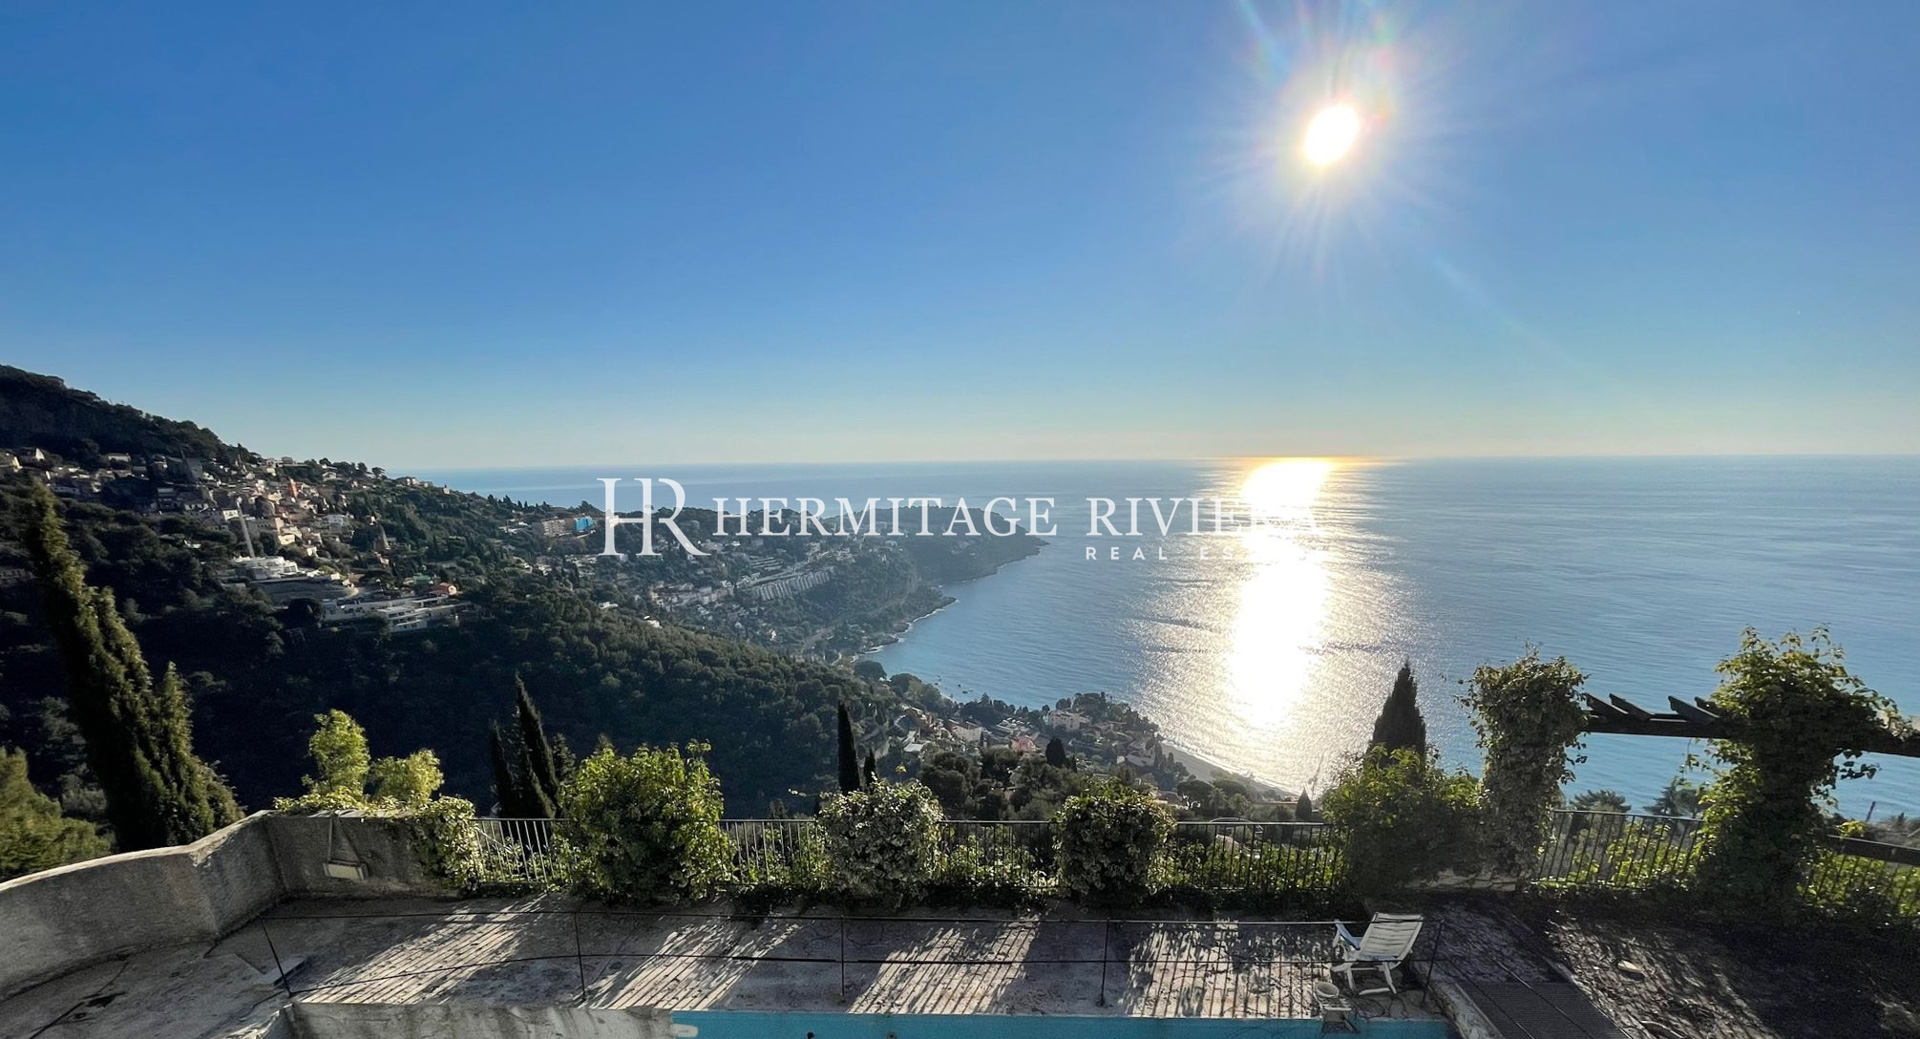 Propriete proche Monaco vue mer panoramique (image 1)